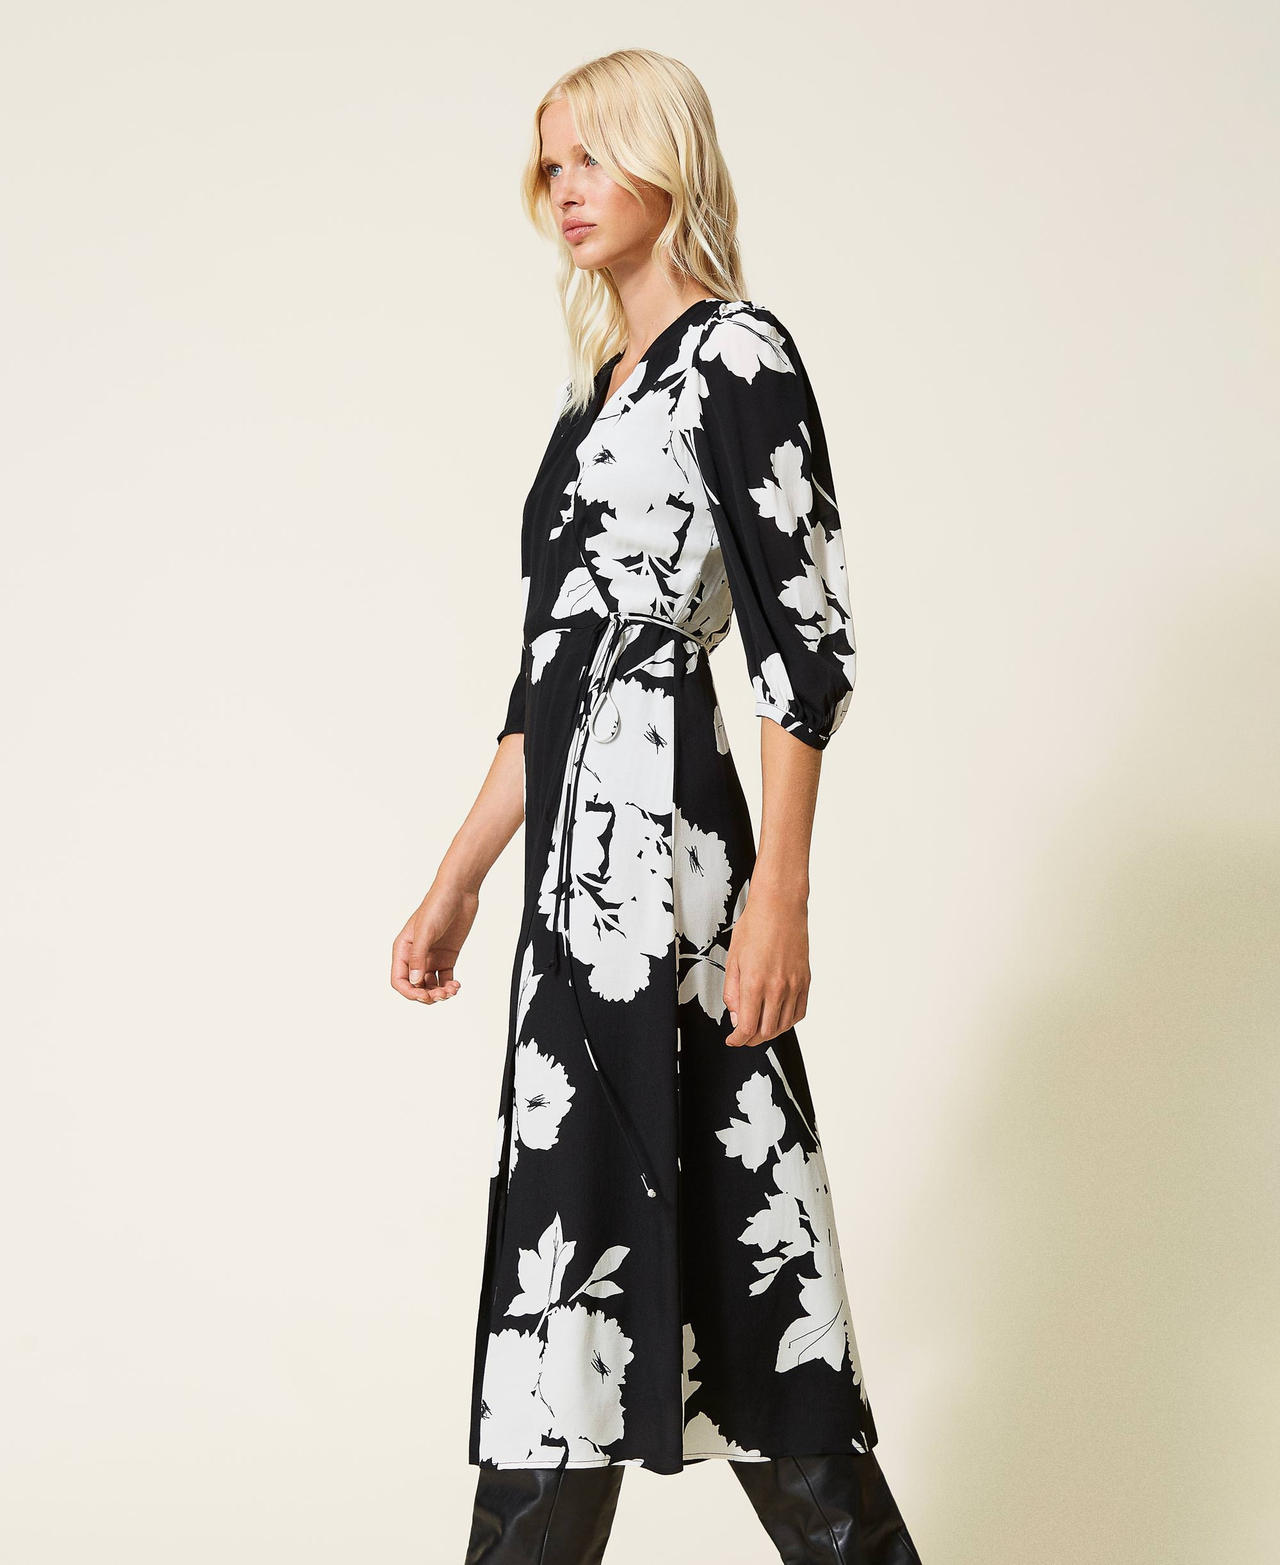 Robe longue en crêpe avec imprimé floral Imprimé Fleurs Blanc « Neige » / Noir Femme 212TP2635-02